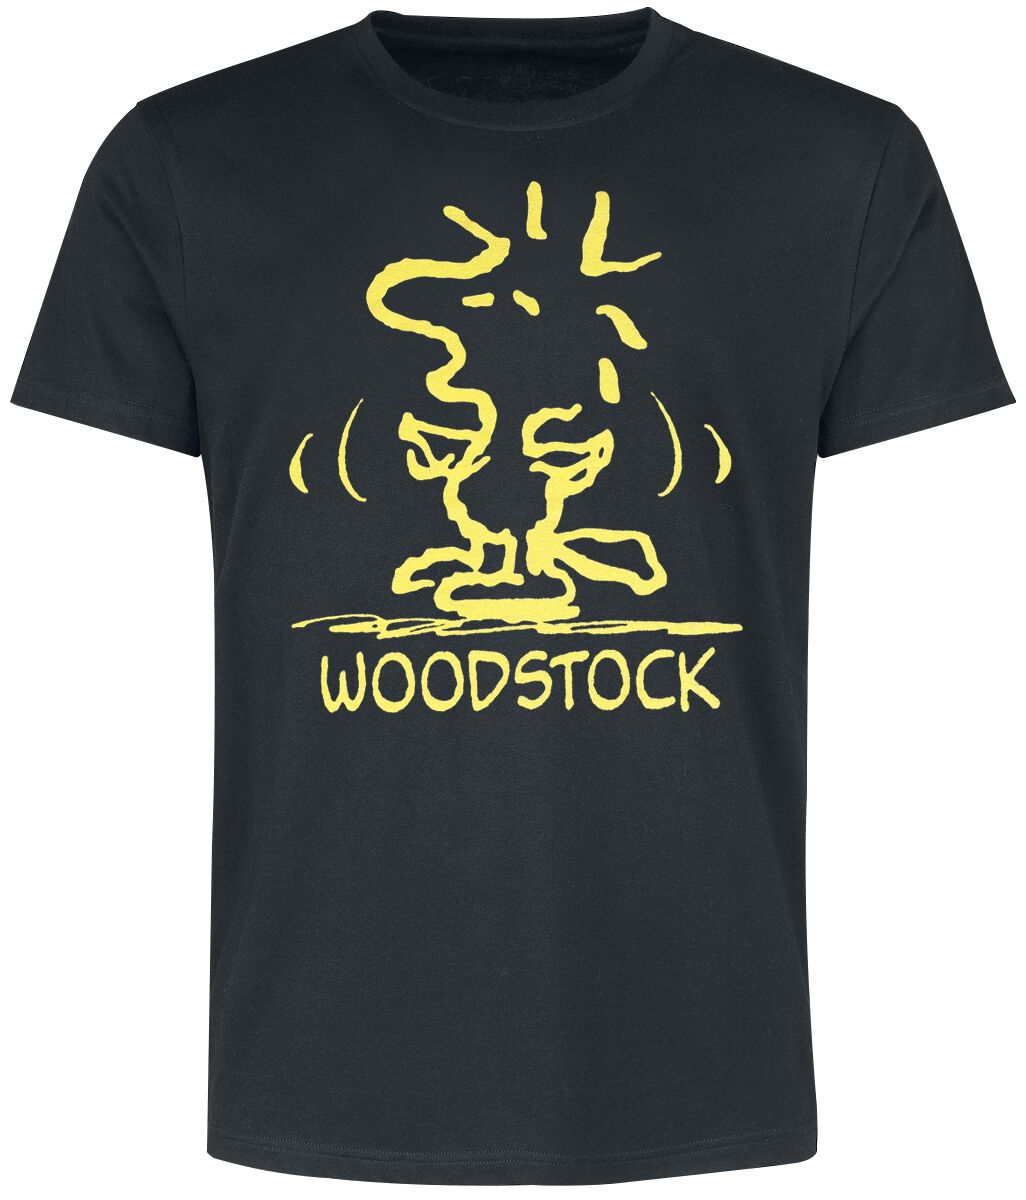 Peanuts T-Shirt - Woodstock - XL - für Männer - Größe XL - schwarz  - EMP exklusives Merchandise!